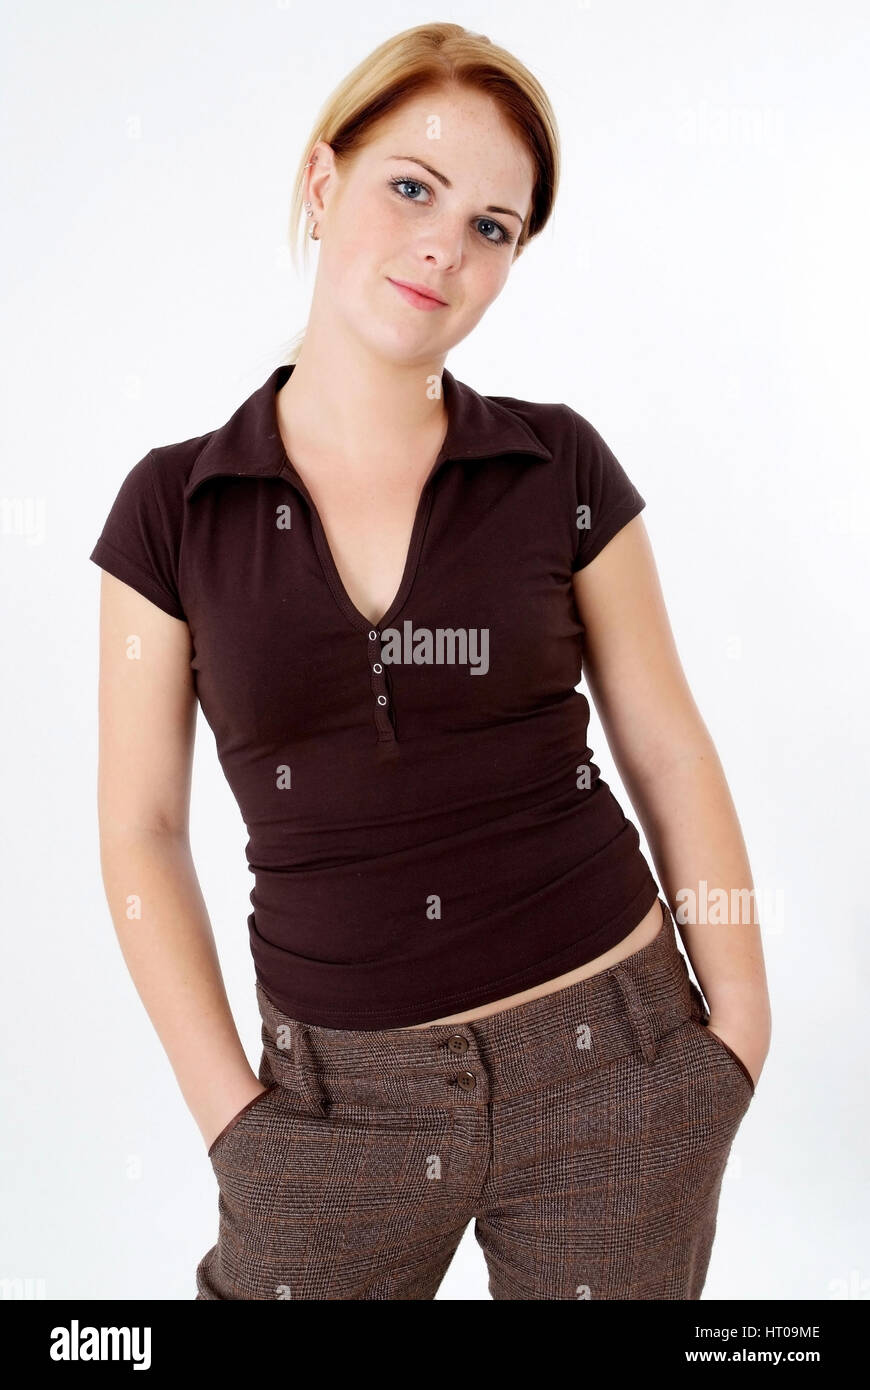 Blonde Frau, 20 Jahre, in braunem Shirt und Hose - young, trendy woman Stock Photo